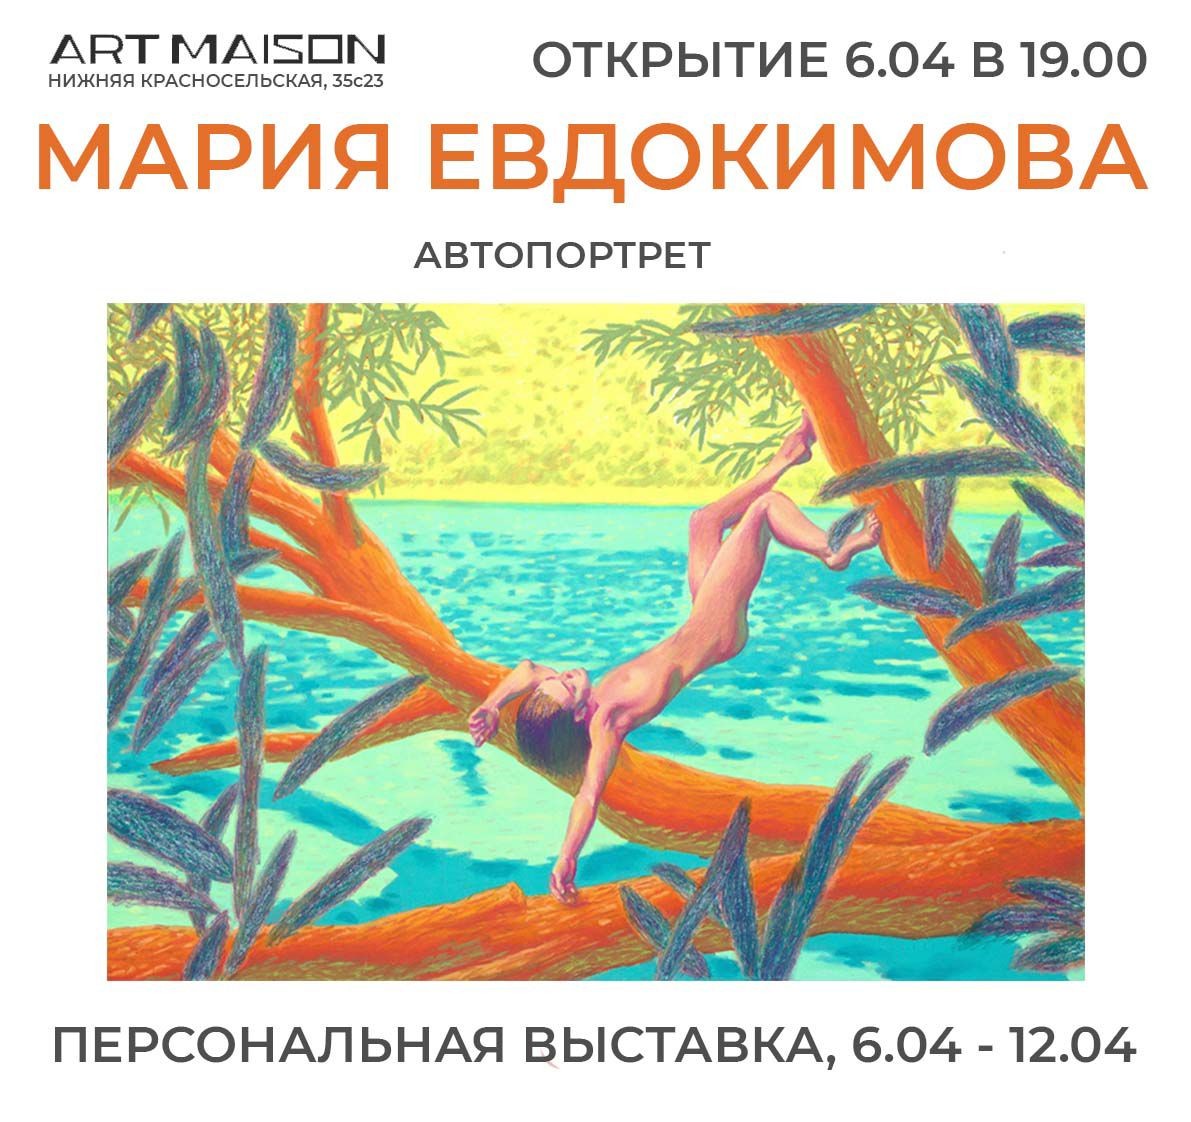 6.04 - 12.04 Персональная выставка Марии Евдокимовой «Автопортрет»